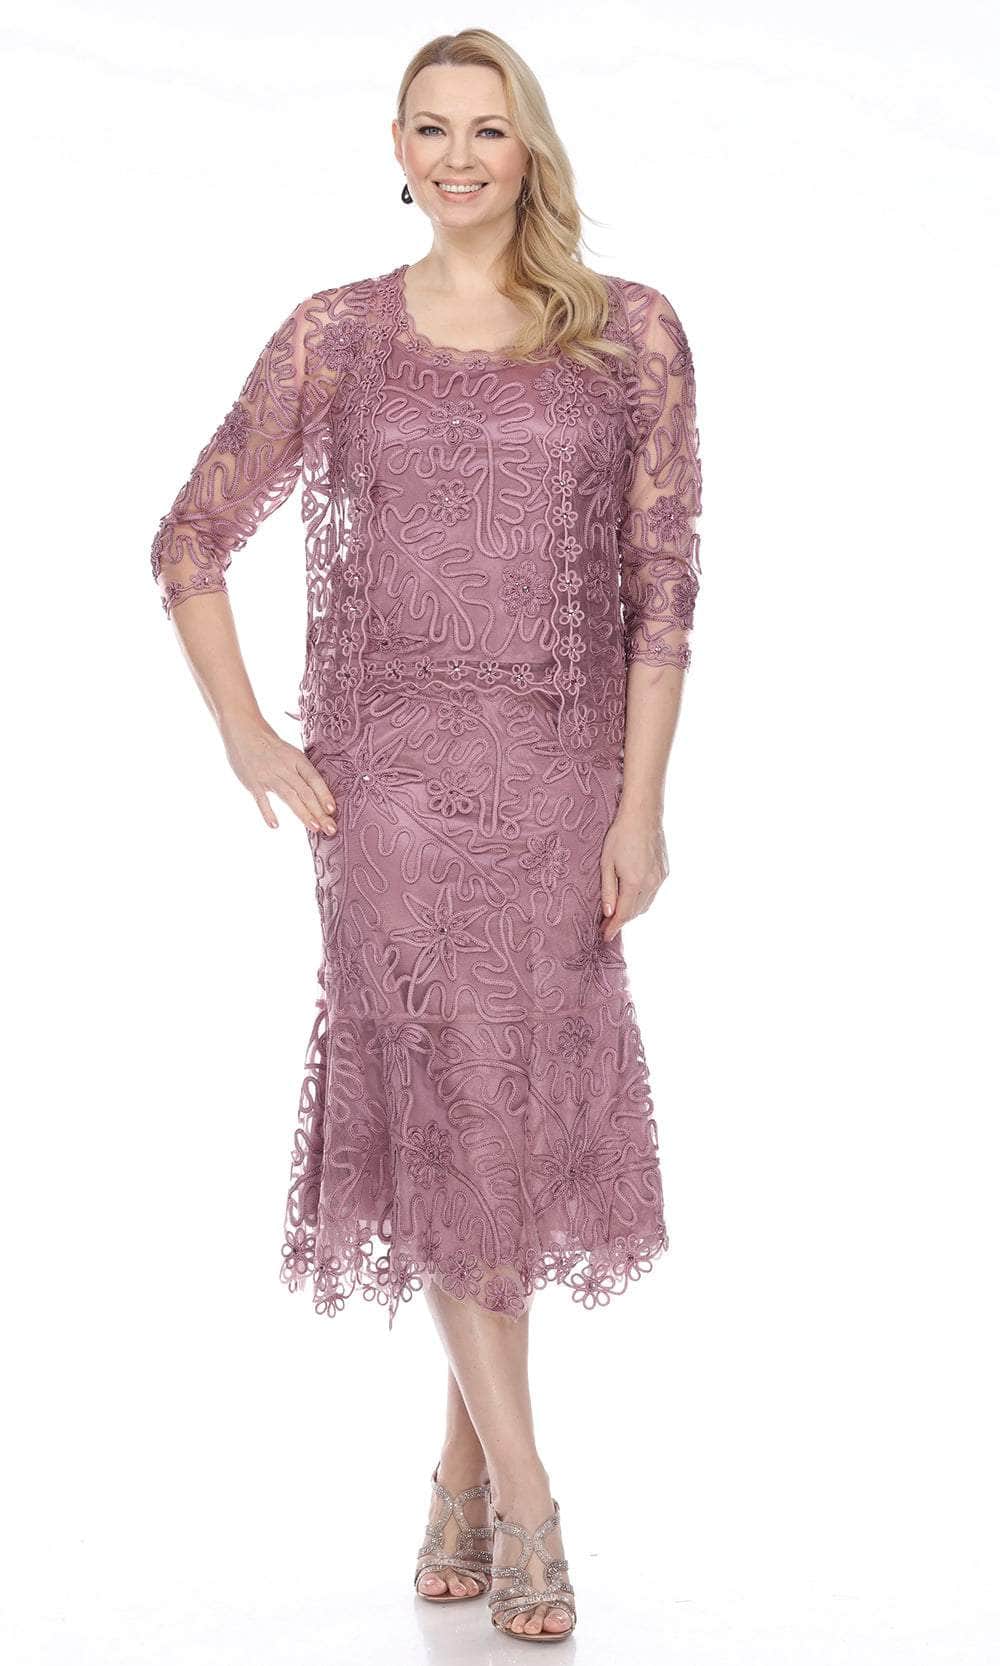 Soulmates 7346 - Soutache 3Pc T-Length Lace Evening Dress Suit Clothing Set Rosewood / S